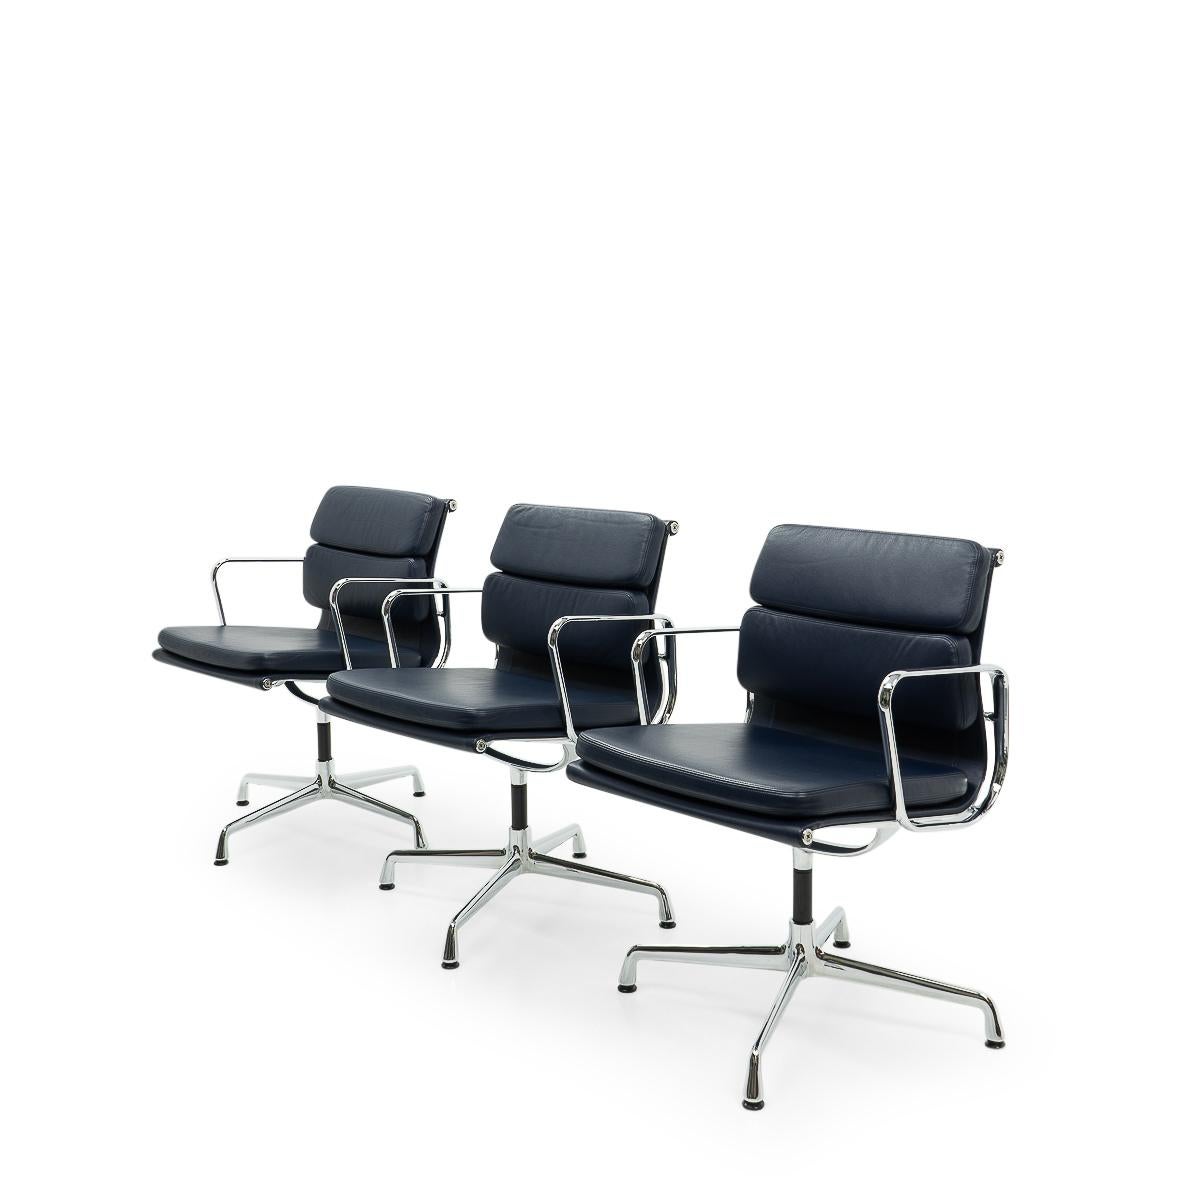 Die Aluminum Group Chairs von Charles & Ray Eames gehören zu den wichtigsten Entwürfen des 20. Jahrhunderts. Ihr ursprüngliches Design aus den 1950er Jahren ist auch heute noch aktuell und verleiht Innenräumen auf der ganzen Welt einen Hauch von